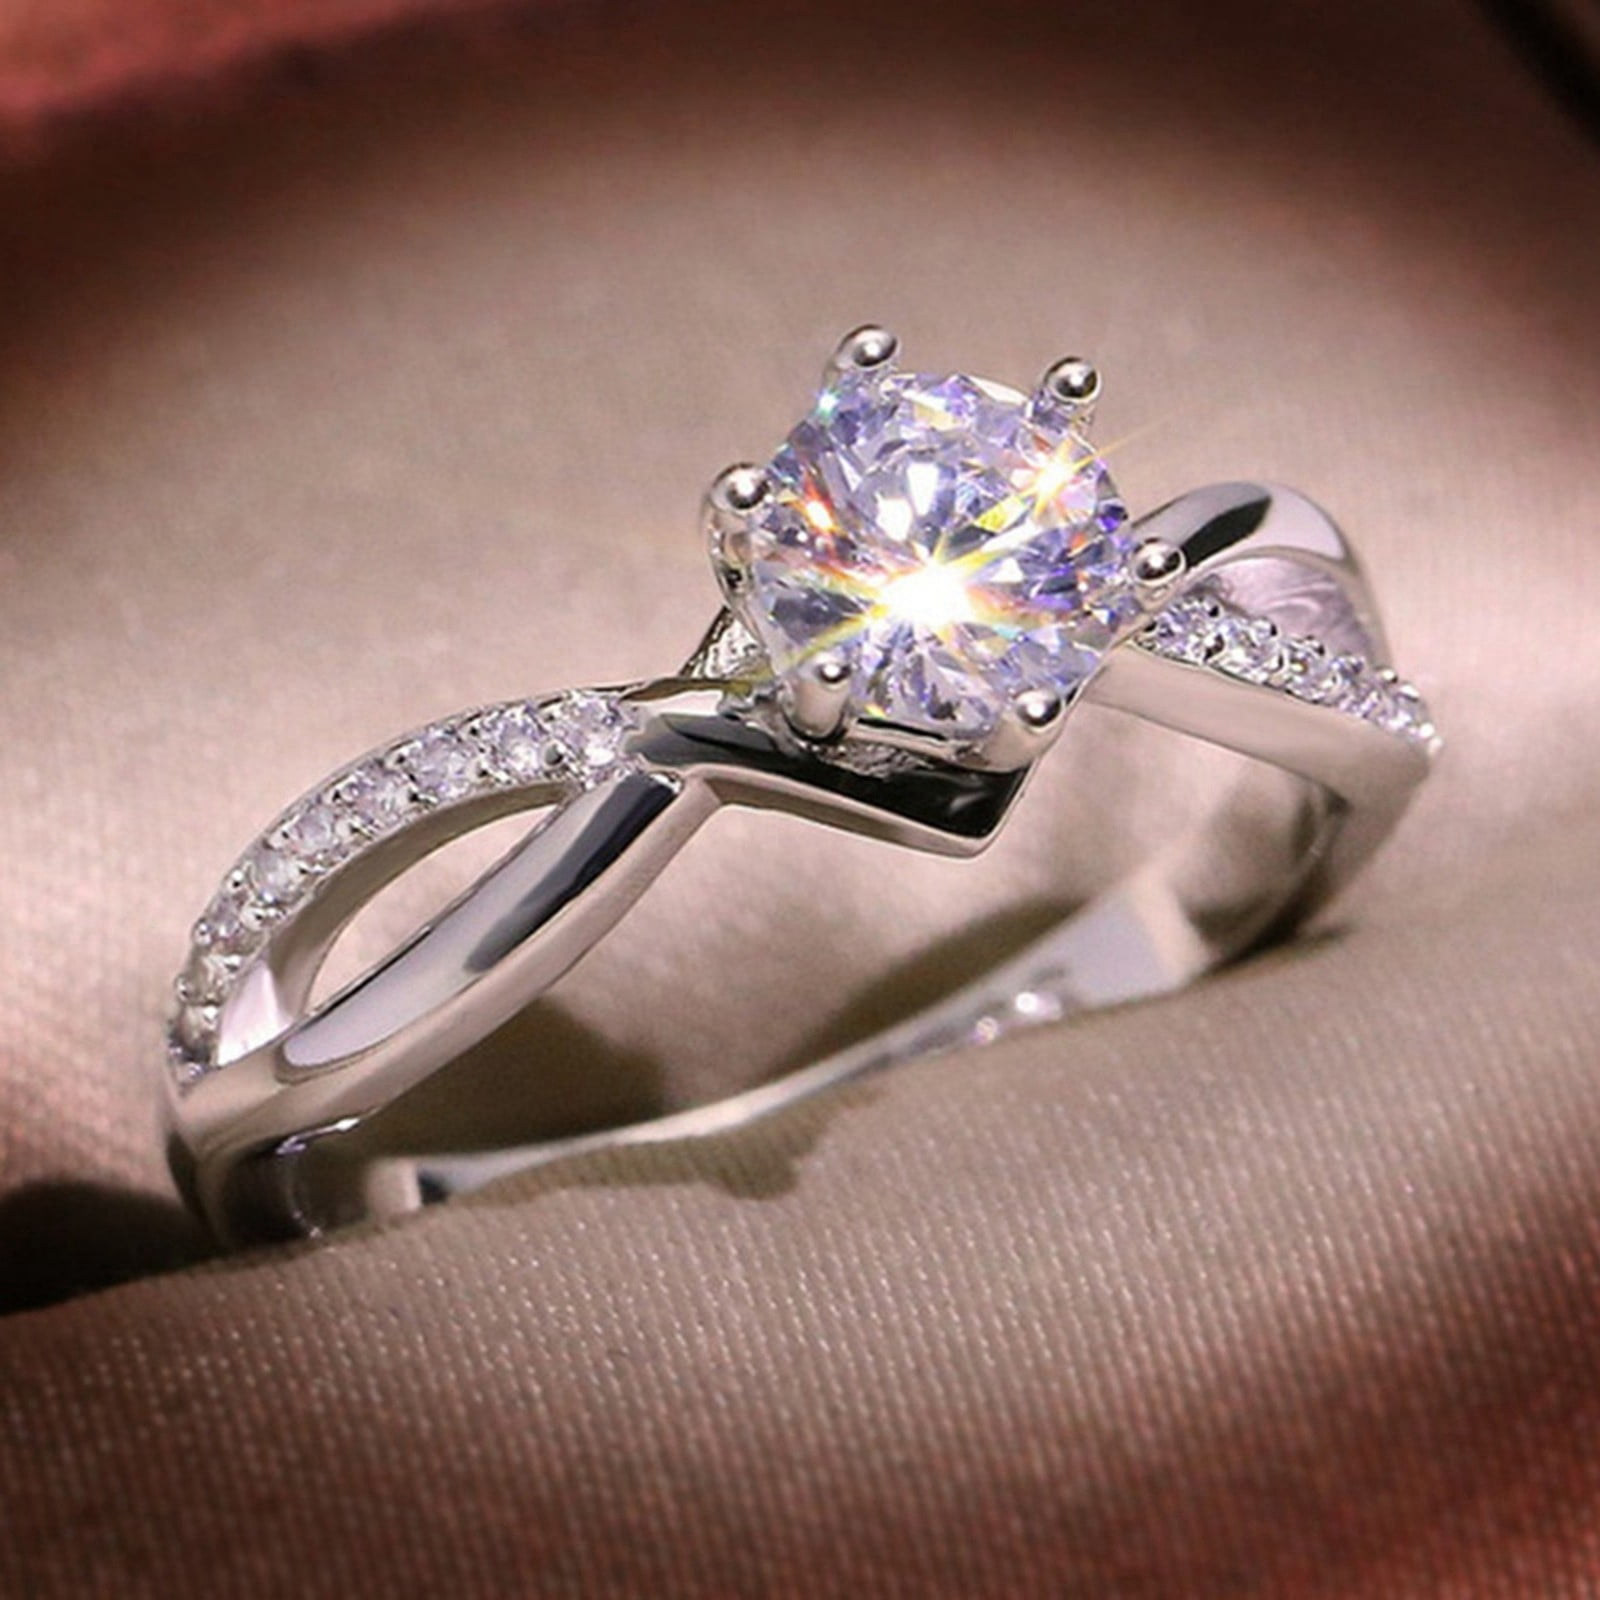 ELFINDEA Ring Zircon Women s Gifts Jewelry Girls Wedding Promise Rings 7 36507b28 3347 474f be2c 87235b1d871c.e231a102662ac98a27e031306b6d74d0